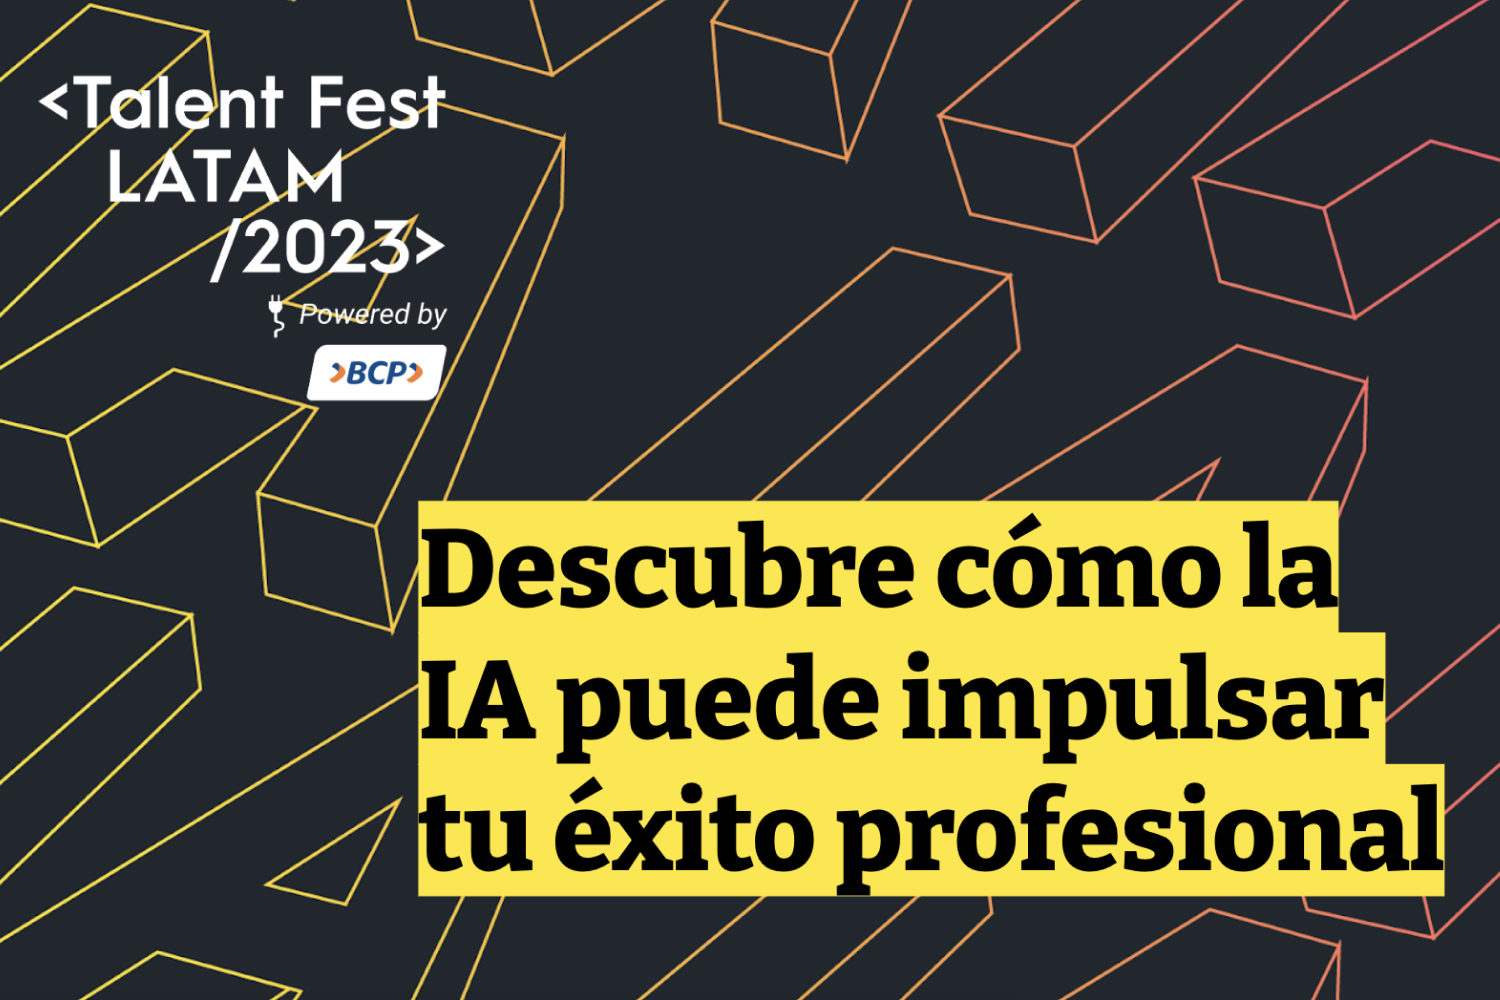 Descubre cómo la inteligencia artificial puede impulsar tu éxito profesional en el Congreso del Talent Fest Latam 2023. ¡No te lo pierdas!